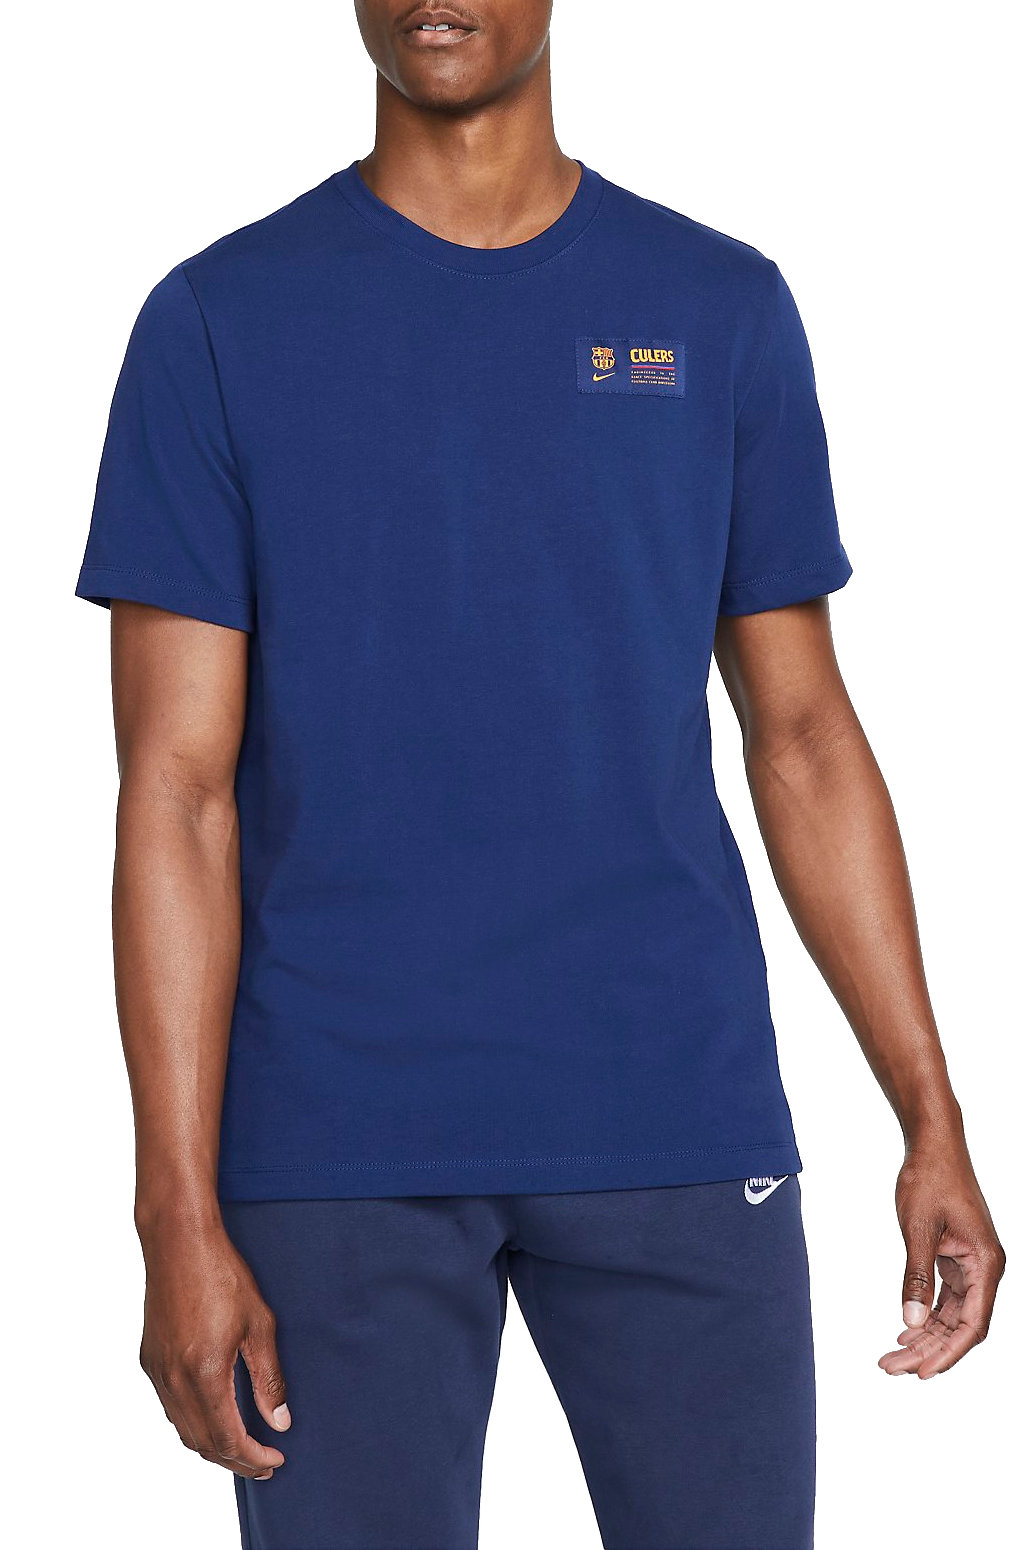 Pánské fotbalové tričko s krátkým rukávem Nike FC Barcelona